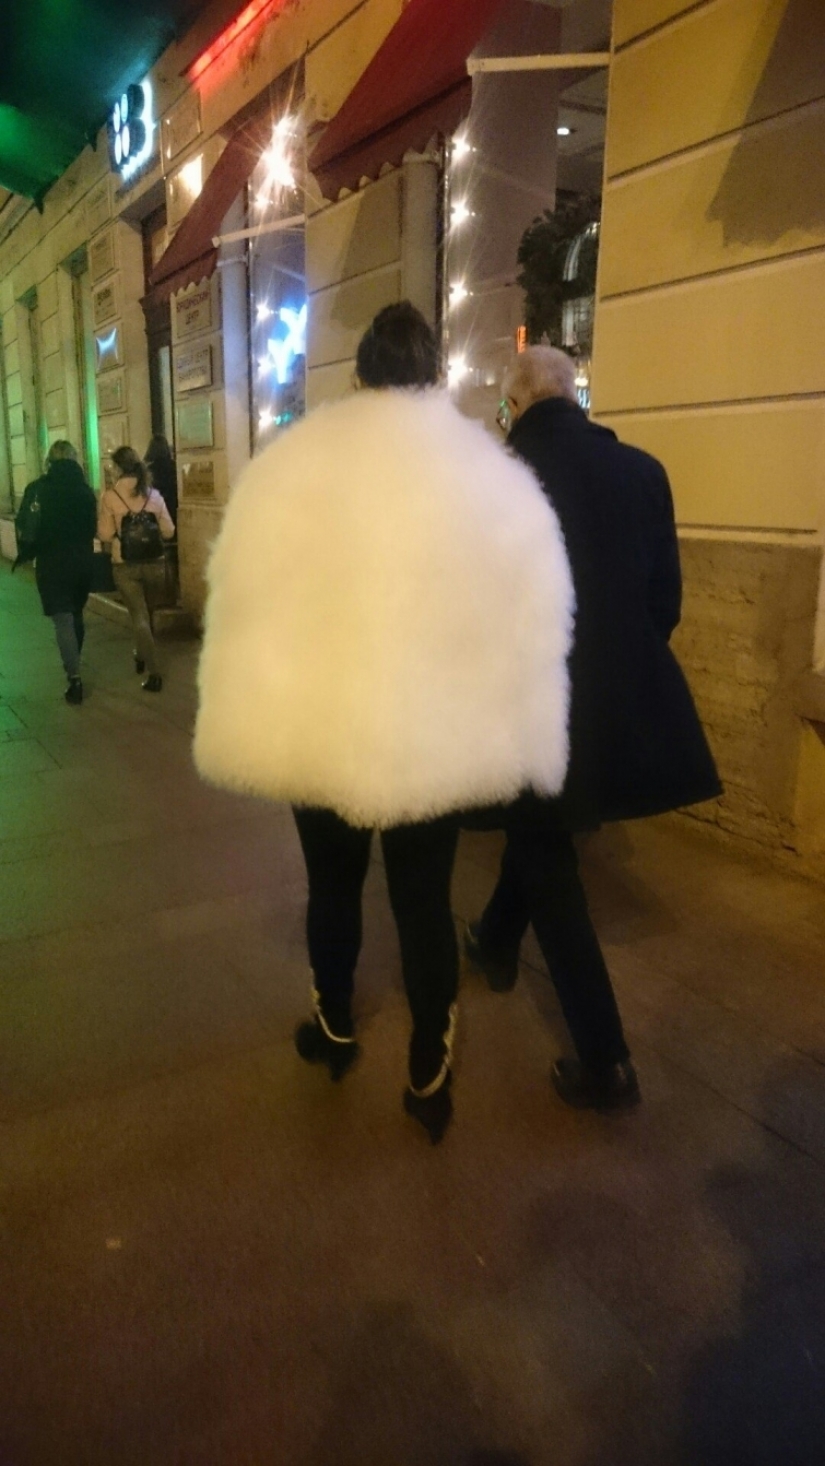 Locura inteligente, o la extraña moda de las calles de San Petersburgo